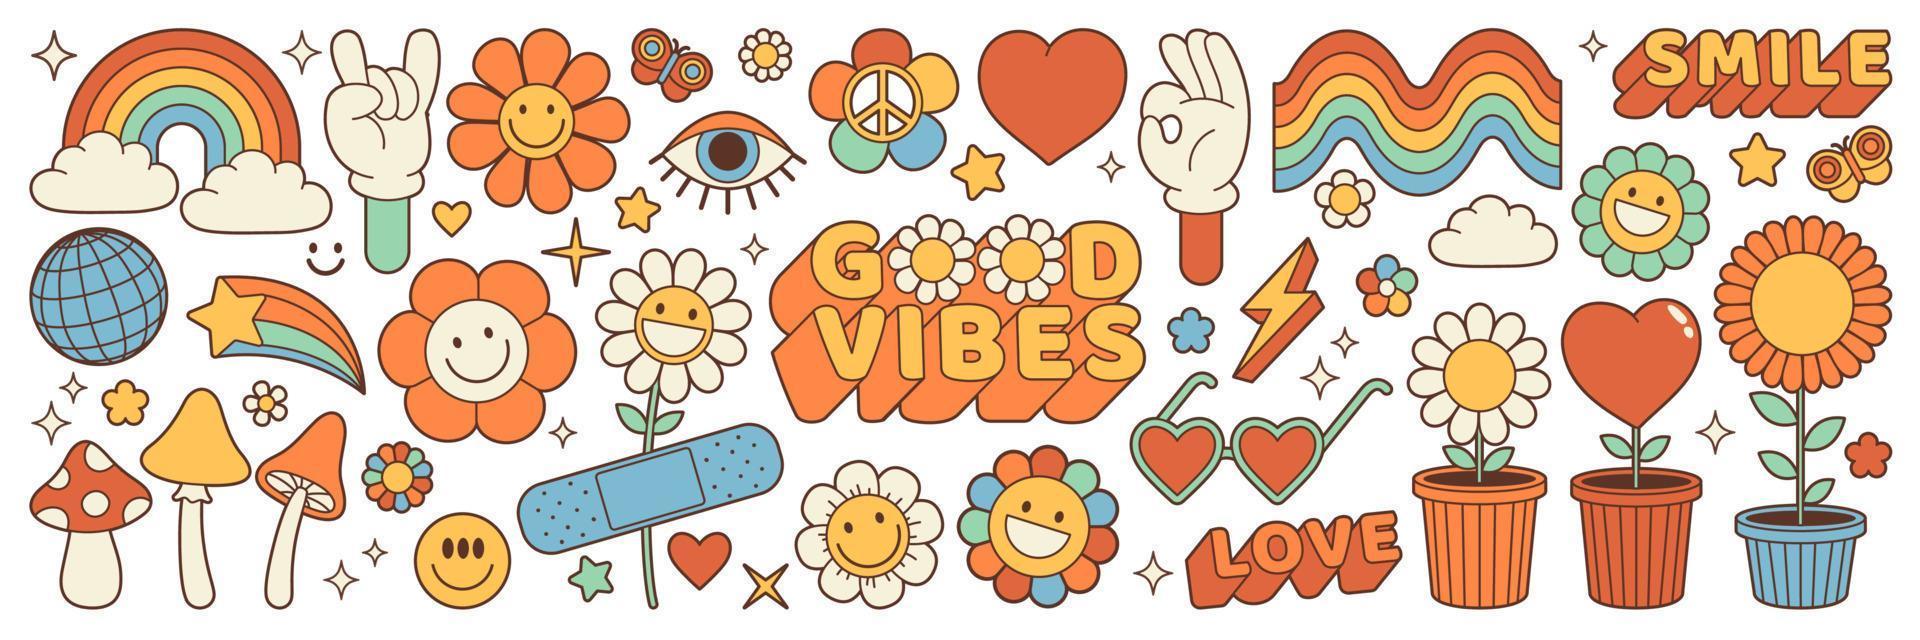 Groovy hippie 70s adesivi. divertente cartone animato fiore, arcobaleno, pace, cuore nel retrò psichedelico stile. vettore